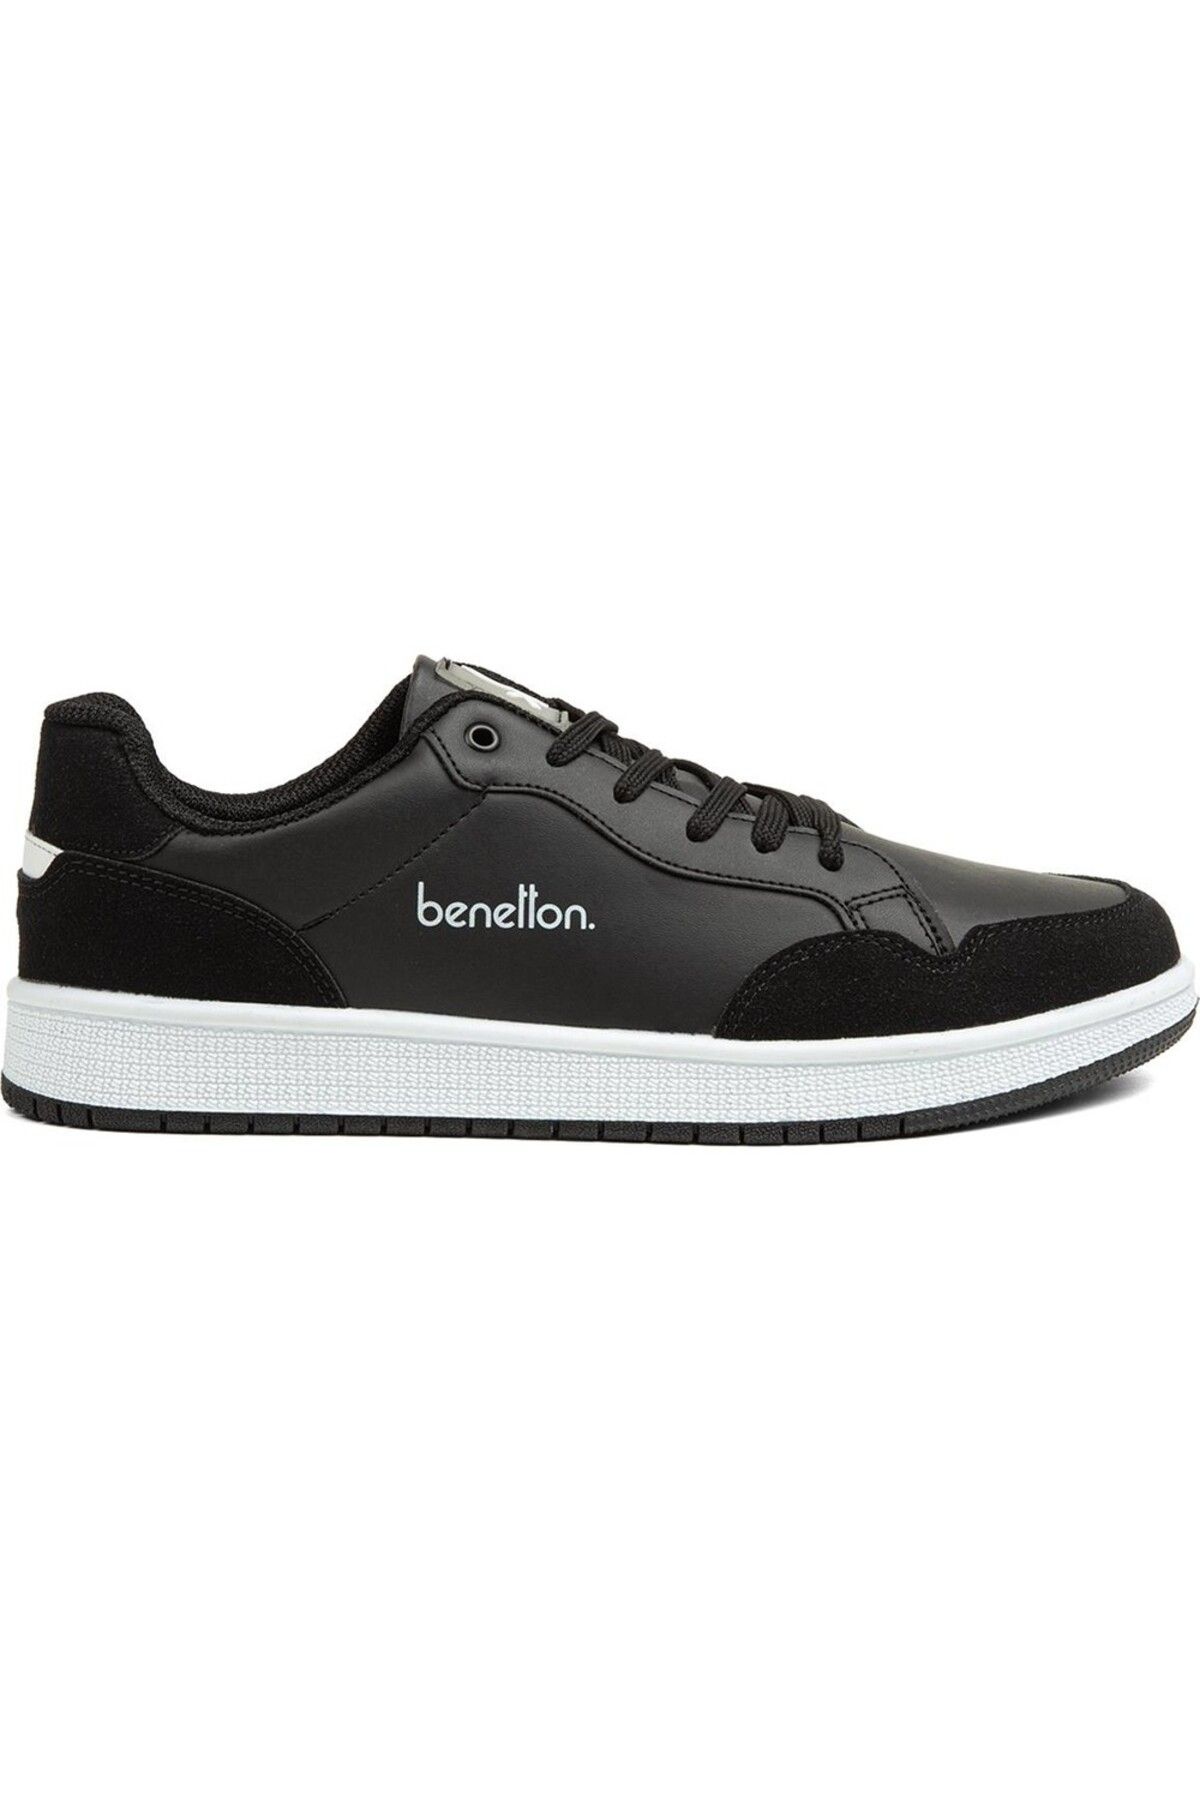 United Colors of Benetton Siyah Erkek Ayakkabısı